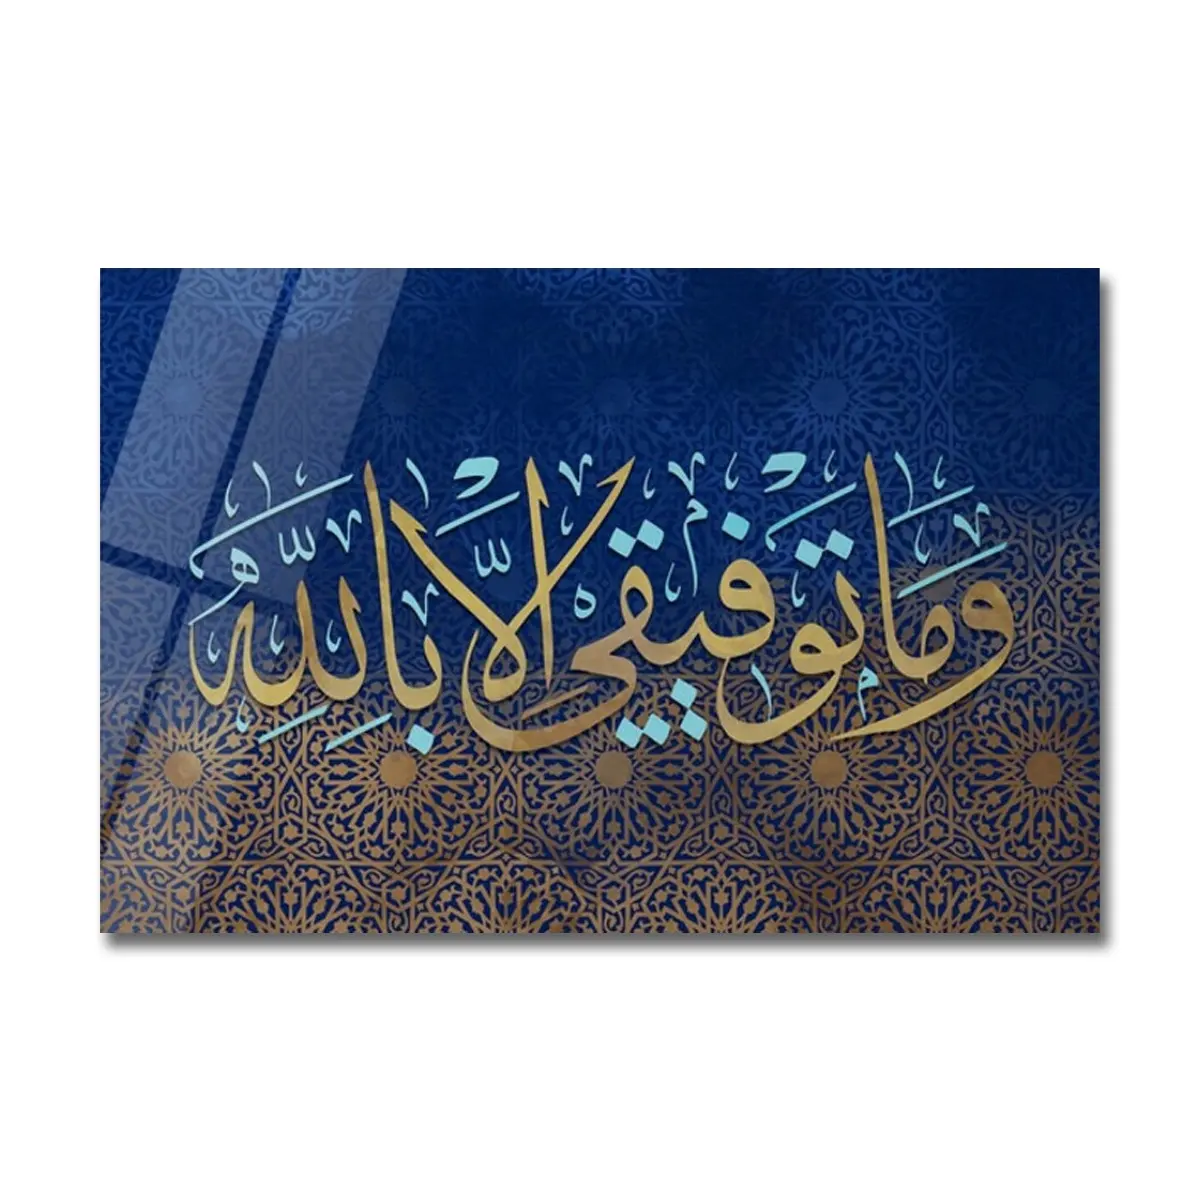 große wandkunst dekoration arabische kalligraphie islam kristall porzellan gemälde wandkunst rahmen individuelle islamische wandkunst